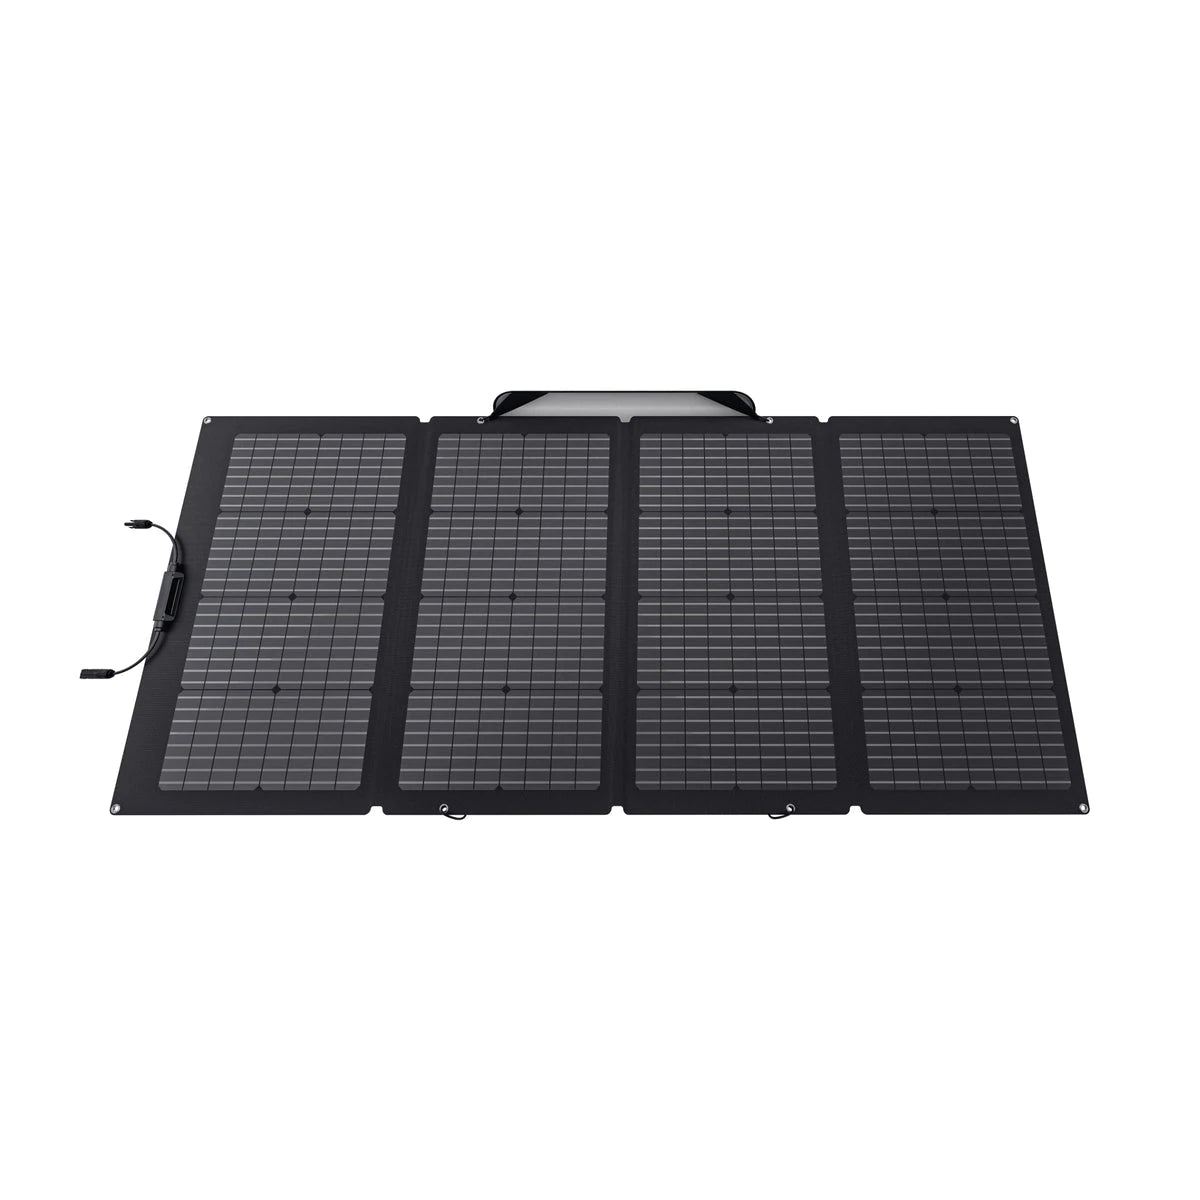 EcoFlow Delta Max + 4x 220W Solar Panel Solar Generator Kit